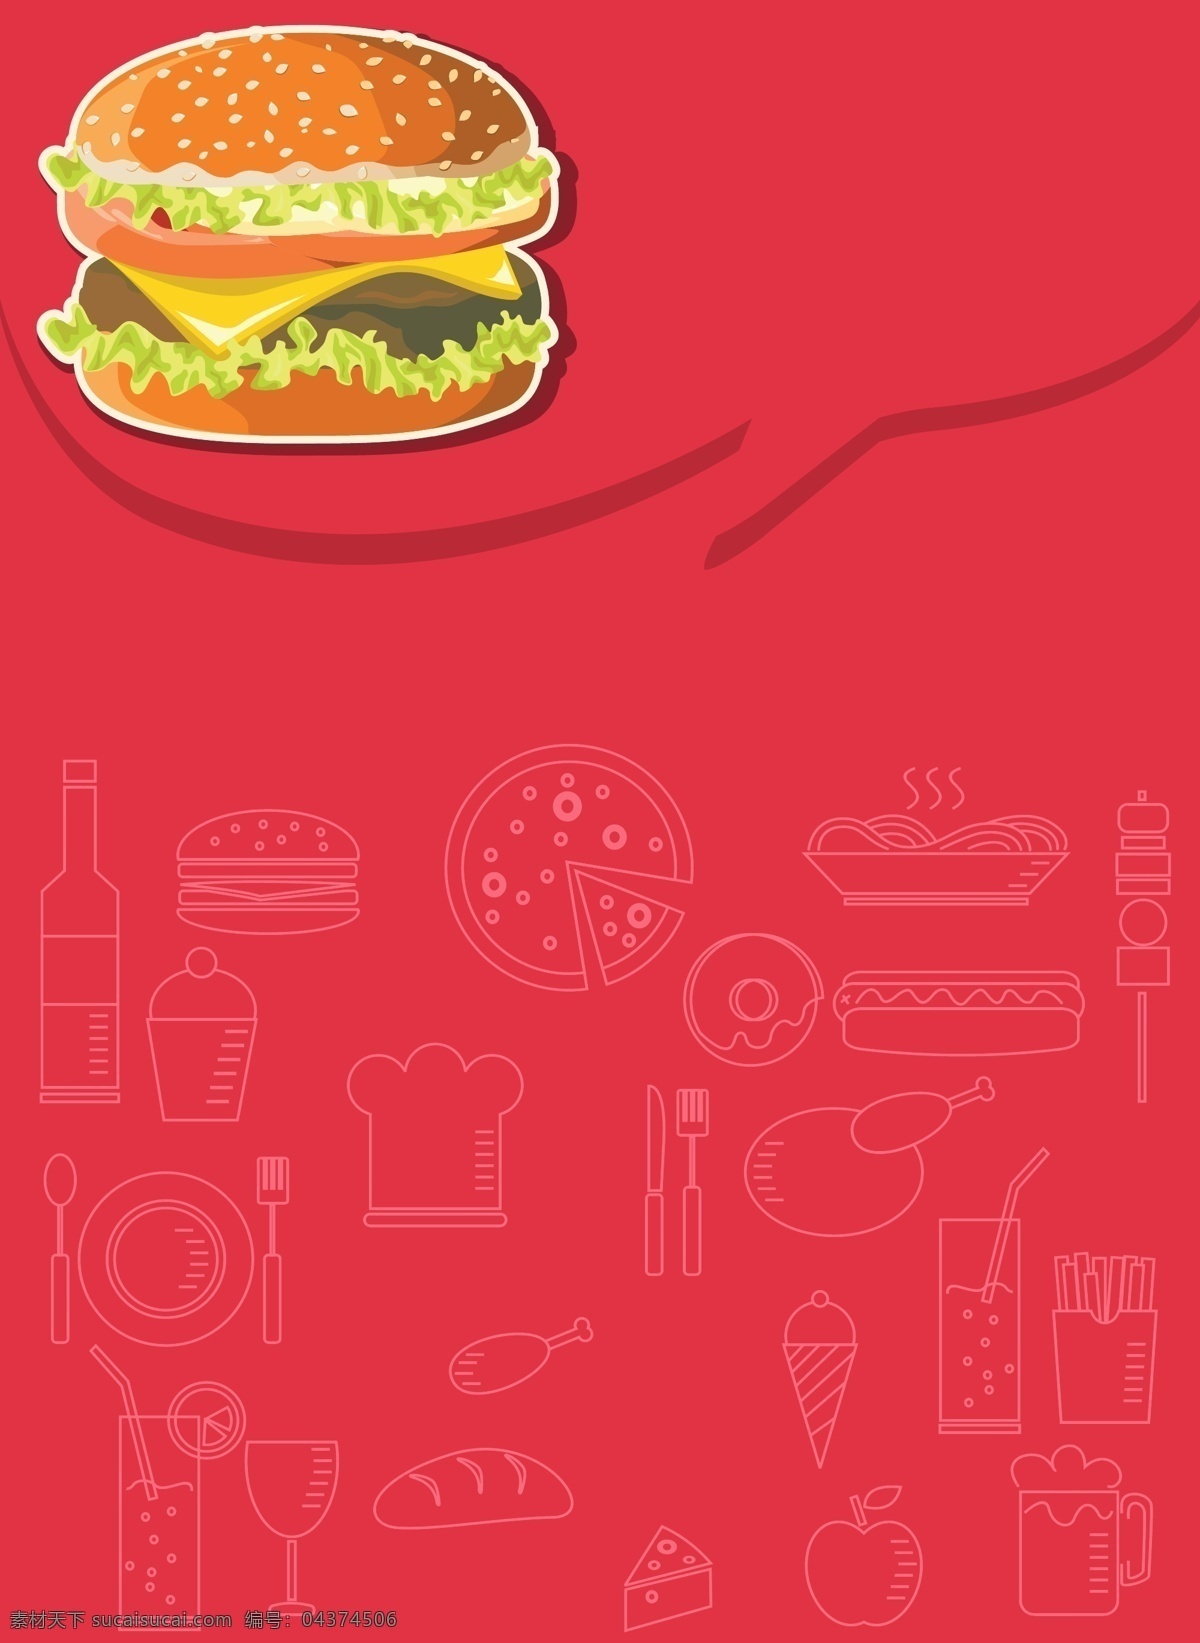 背景 汉堡 红色 卡通 快餐 矢量 手绘 西式 童趣